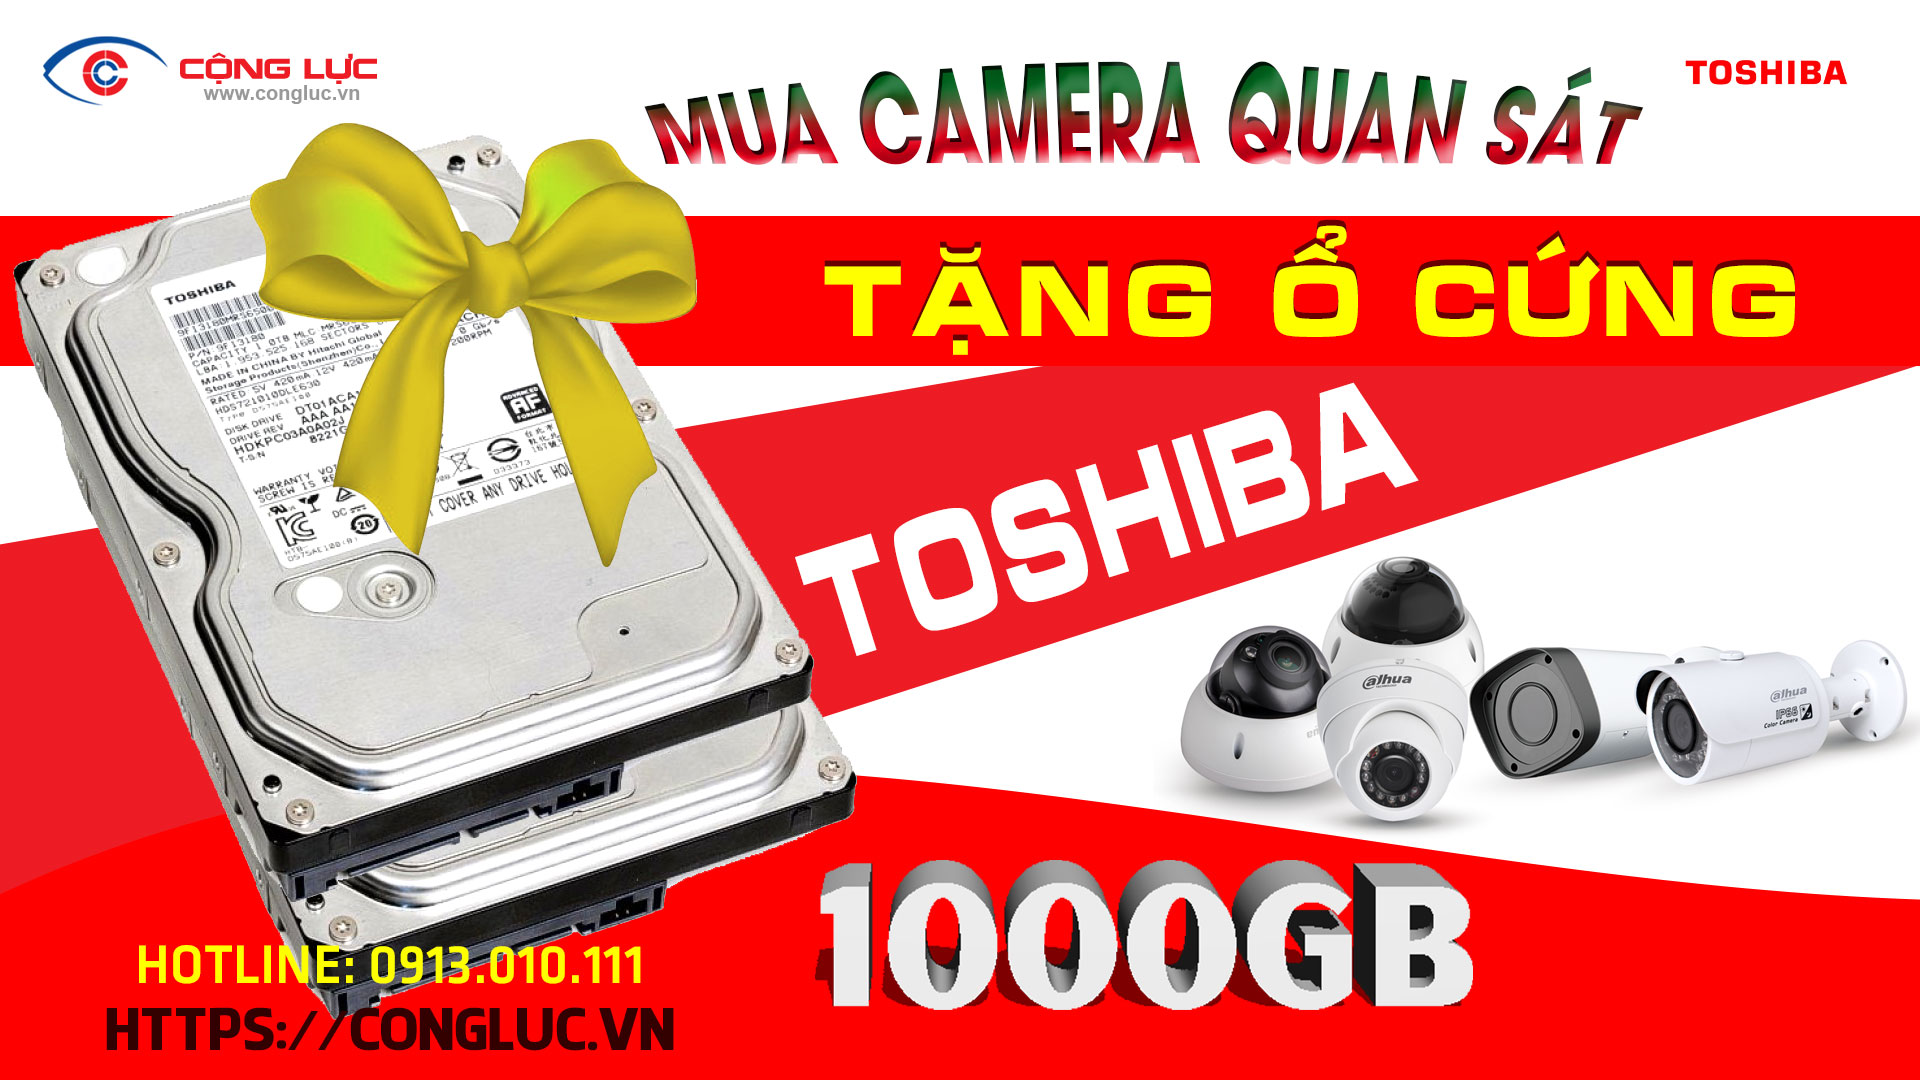 Mua Camera - Tặng Ngay Ổ Cứng Toshiba 1000GB Chính Hãng